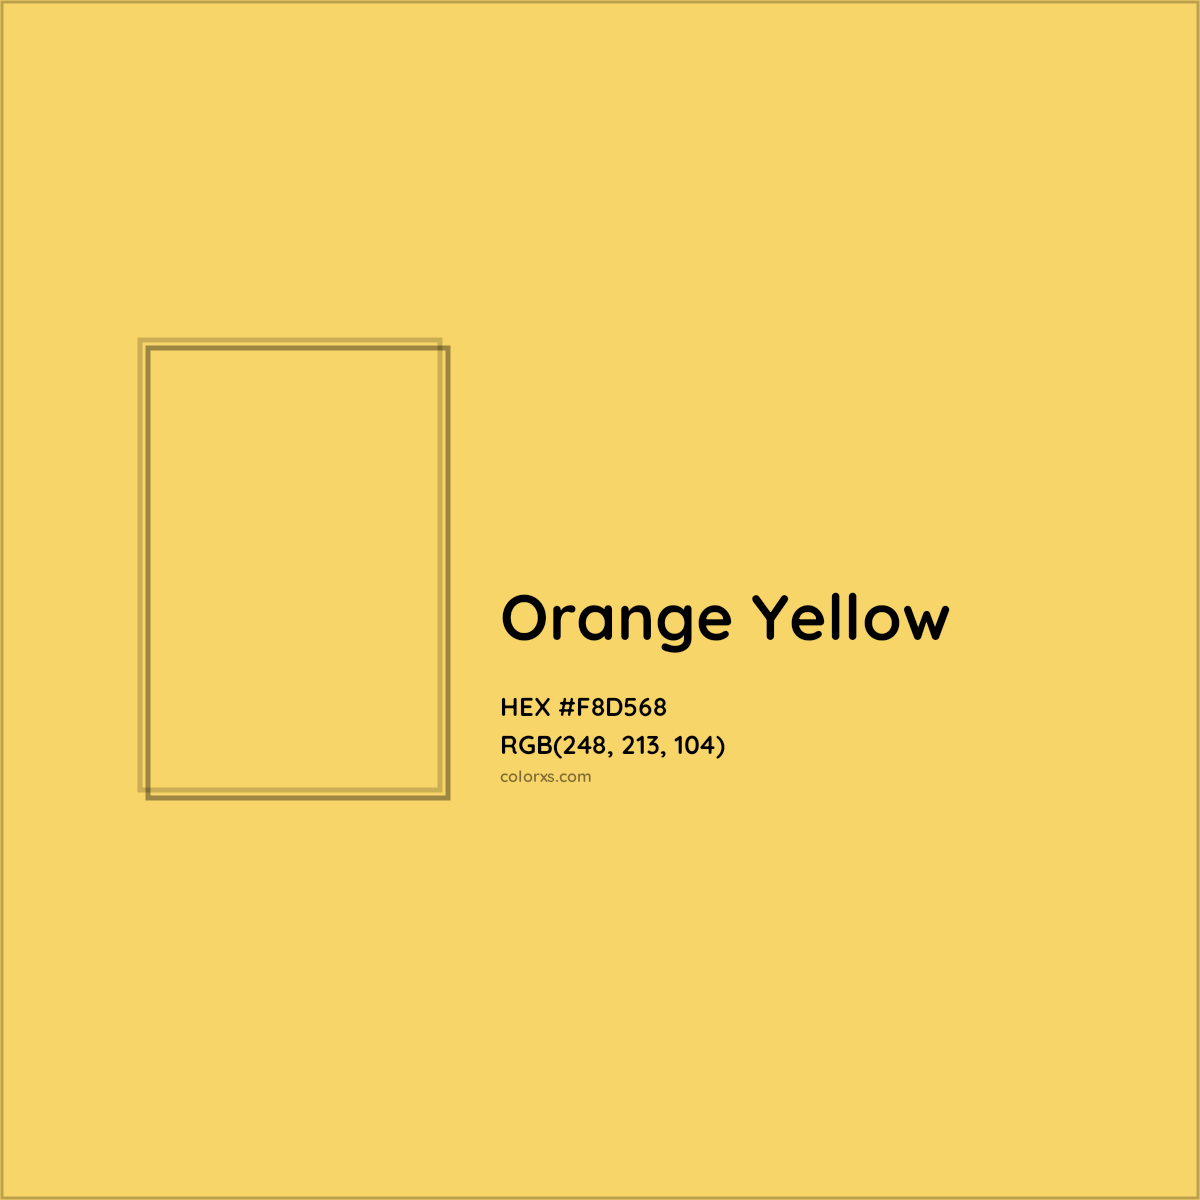 HEX #F8D568 Orange Yellow Color Crayola Crayons - Color Code